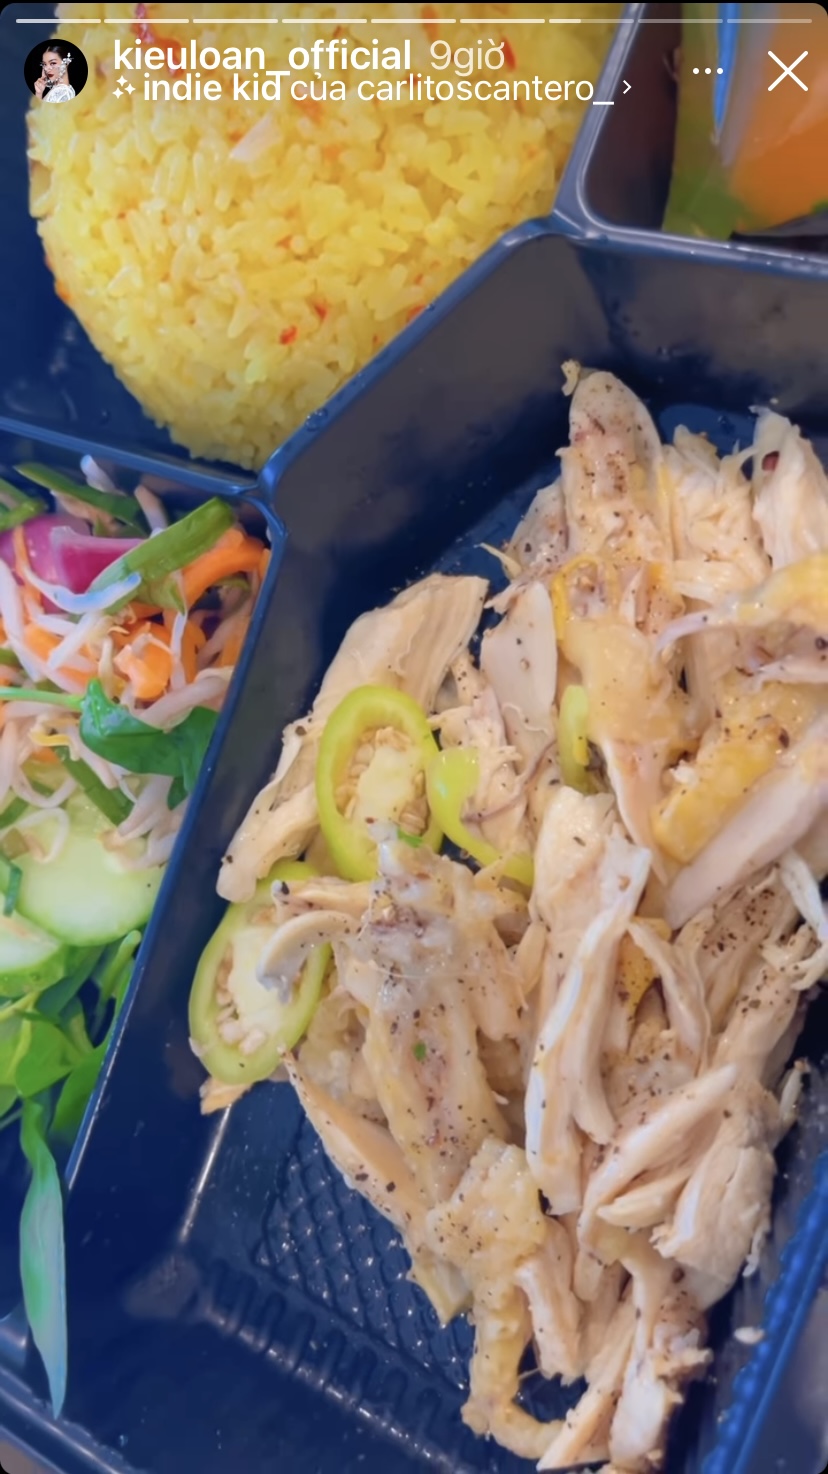 Bữa trưa của Á hậu Kiều Loan là món cơm gà dẻo thơm, đậm đà.